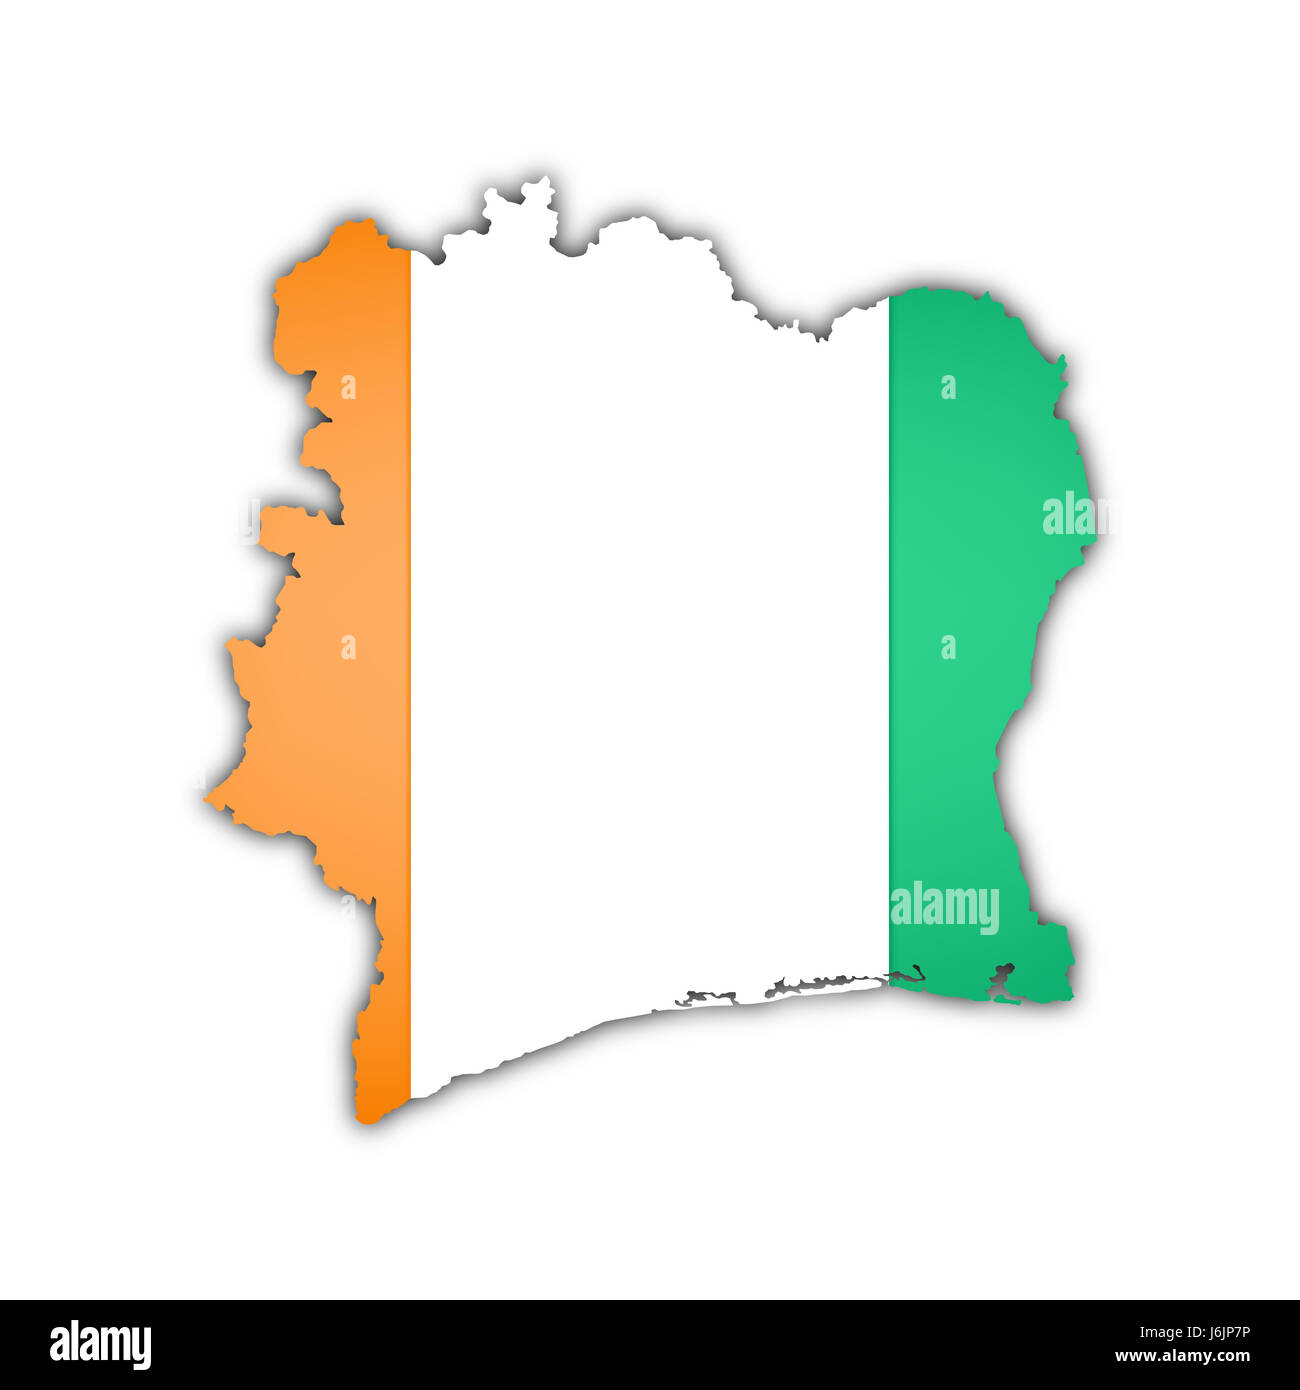 L'Afrique de l'ouest bénin drapeau pays cartographie atlas des cartes carte du monde travel Banque D'Images